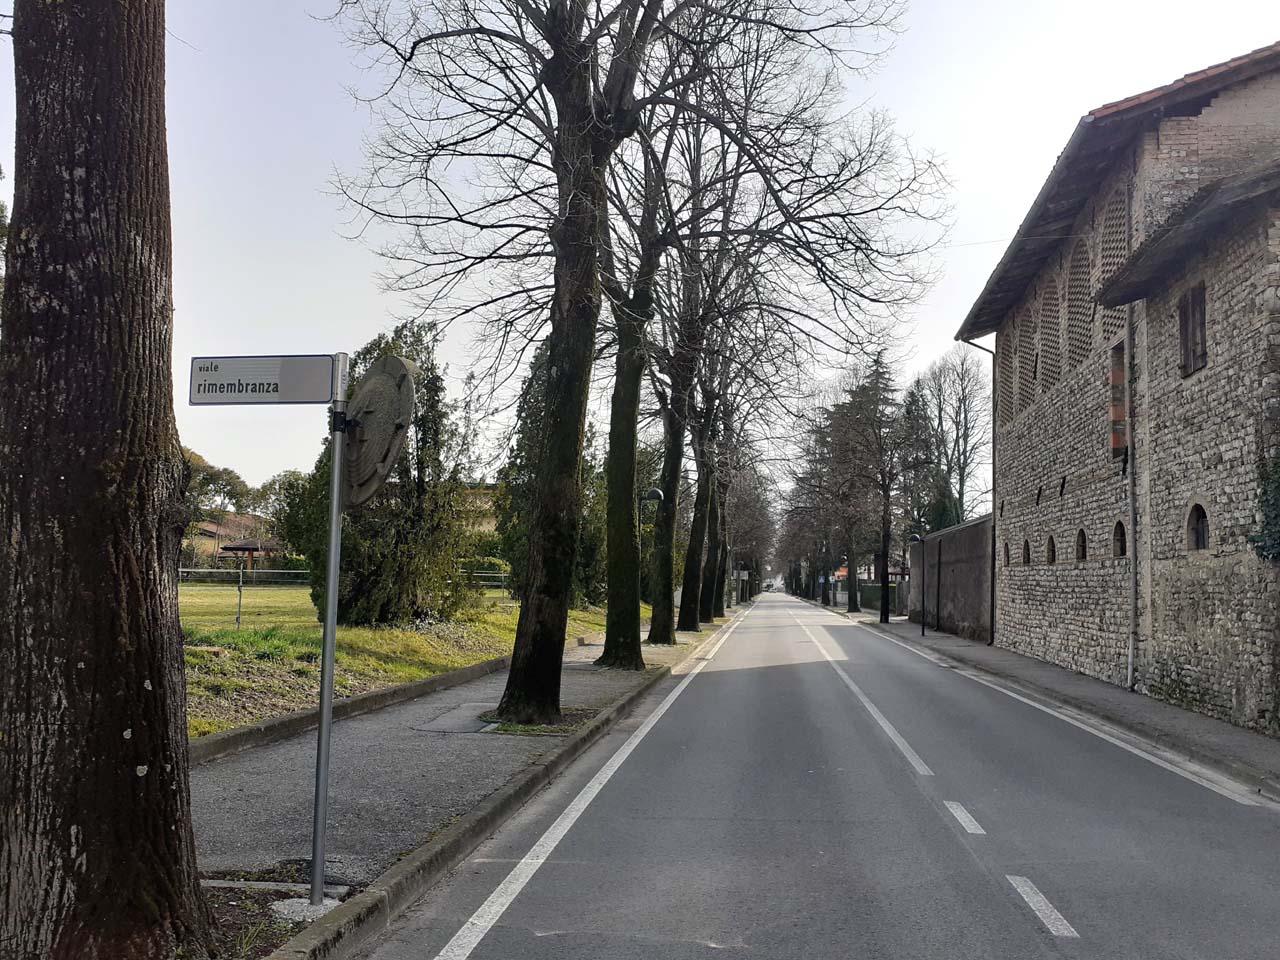 viale, commemorativo/ ai caduti della prima guerra mondiale, Viale della Rimembranza di San Martino al Tagliamento - periodo Fascista (XX)